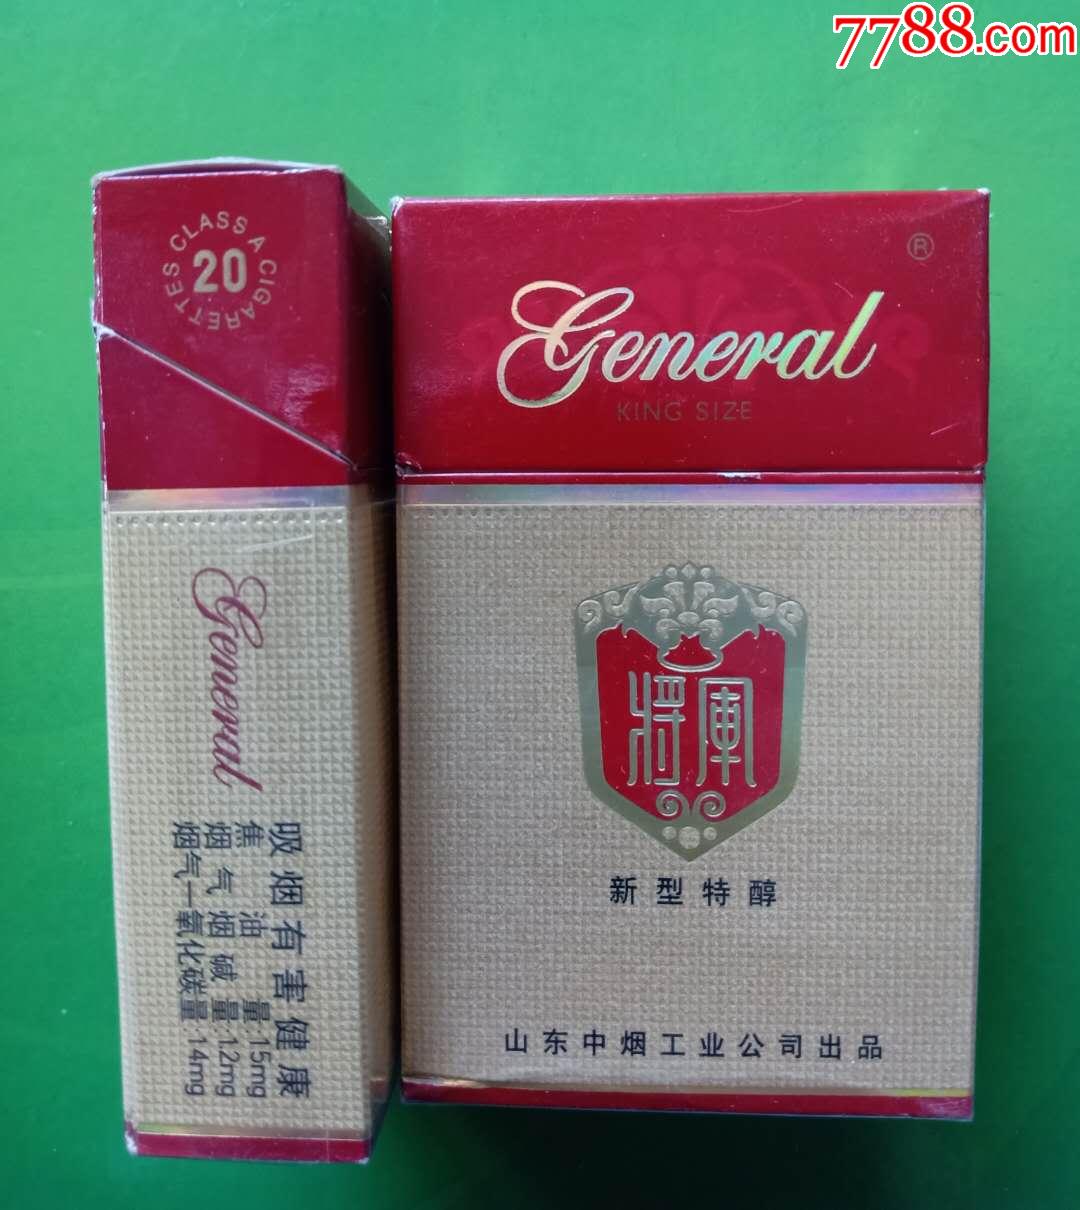 将军特醇12148658侧边无网址山东中烟工业公司